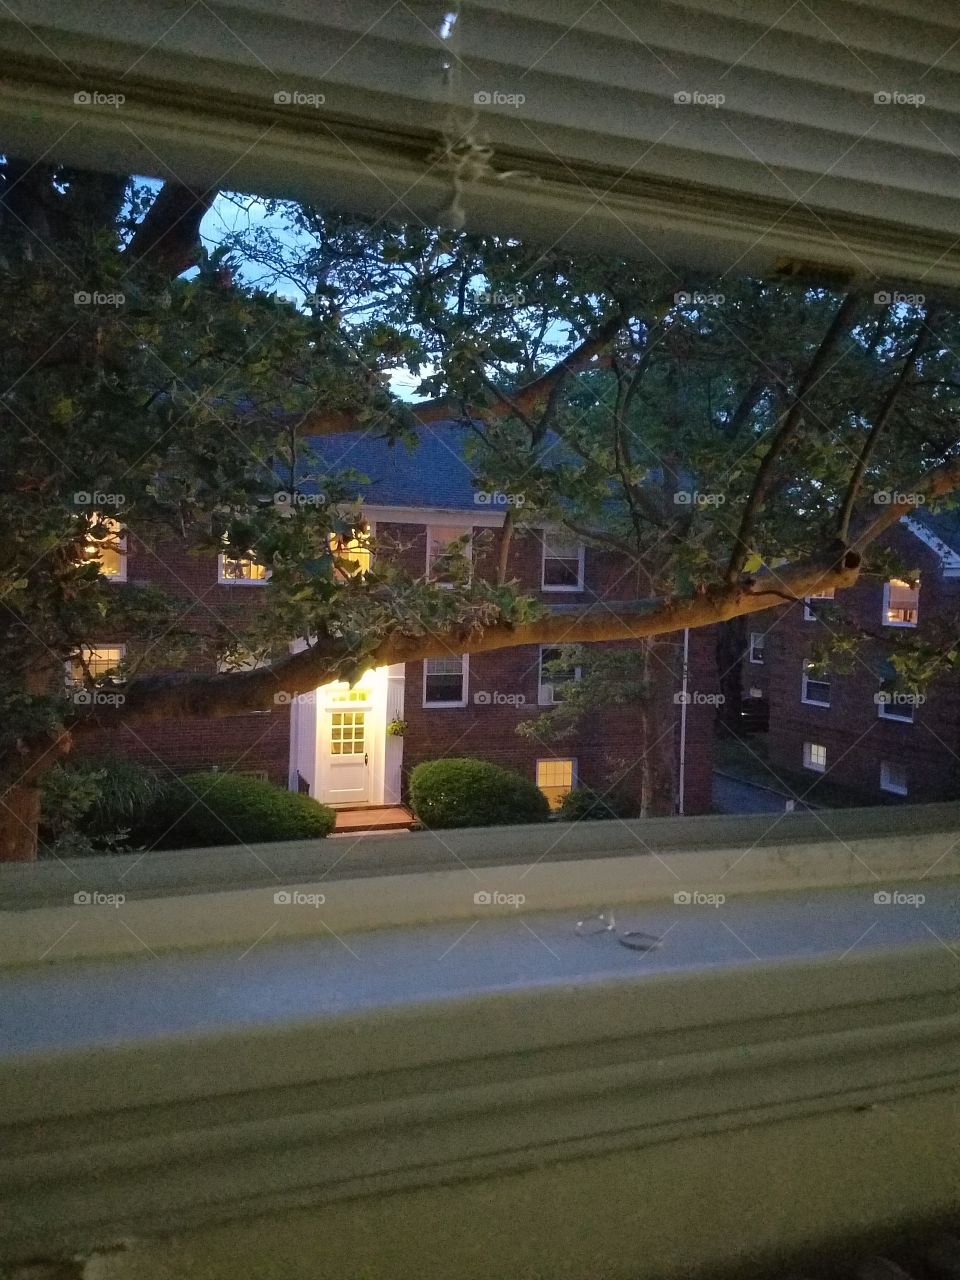 evening neighbor